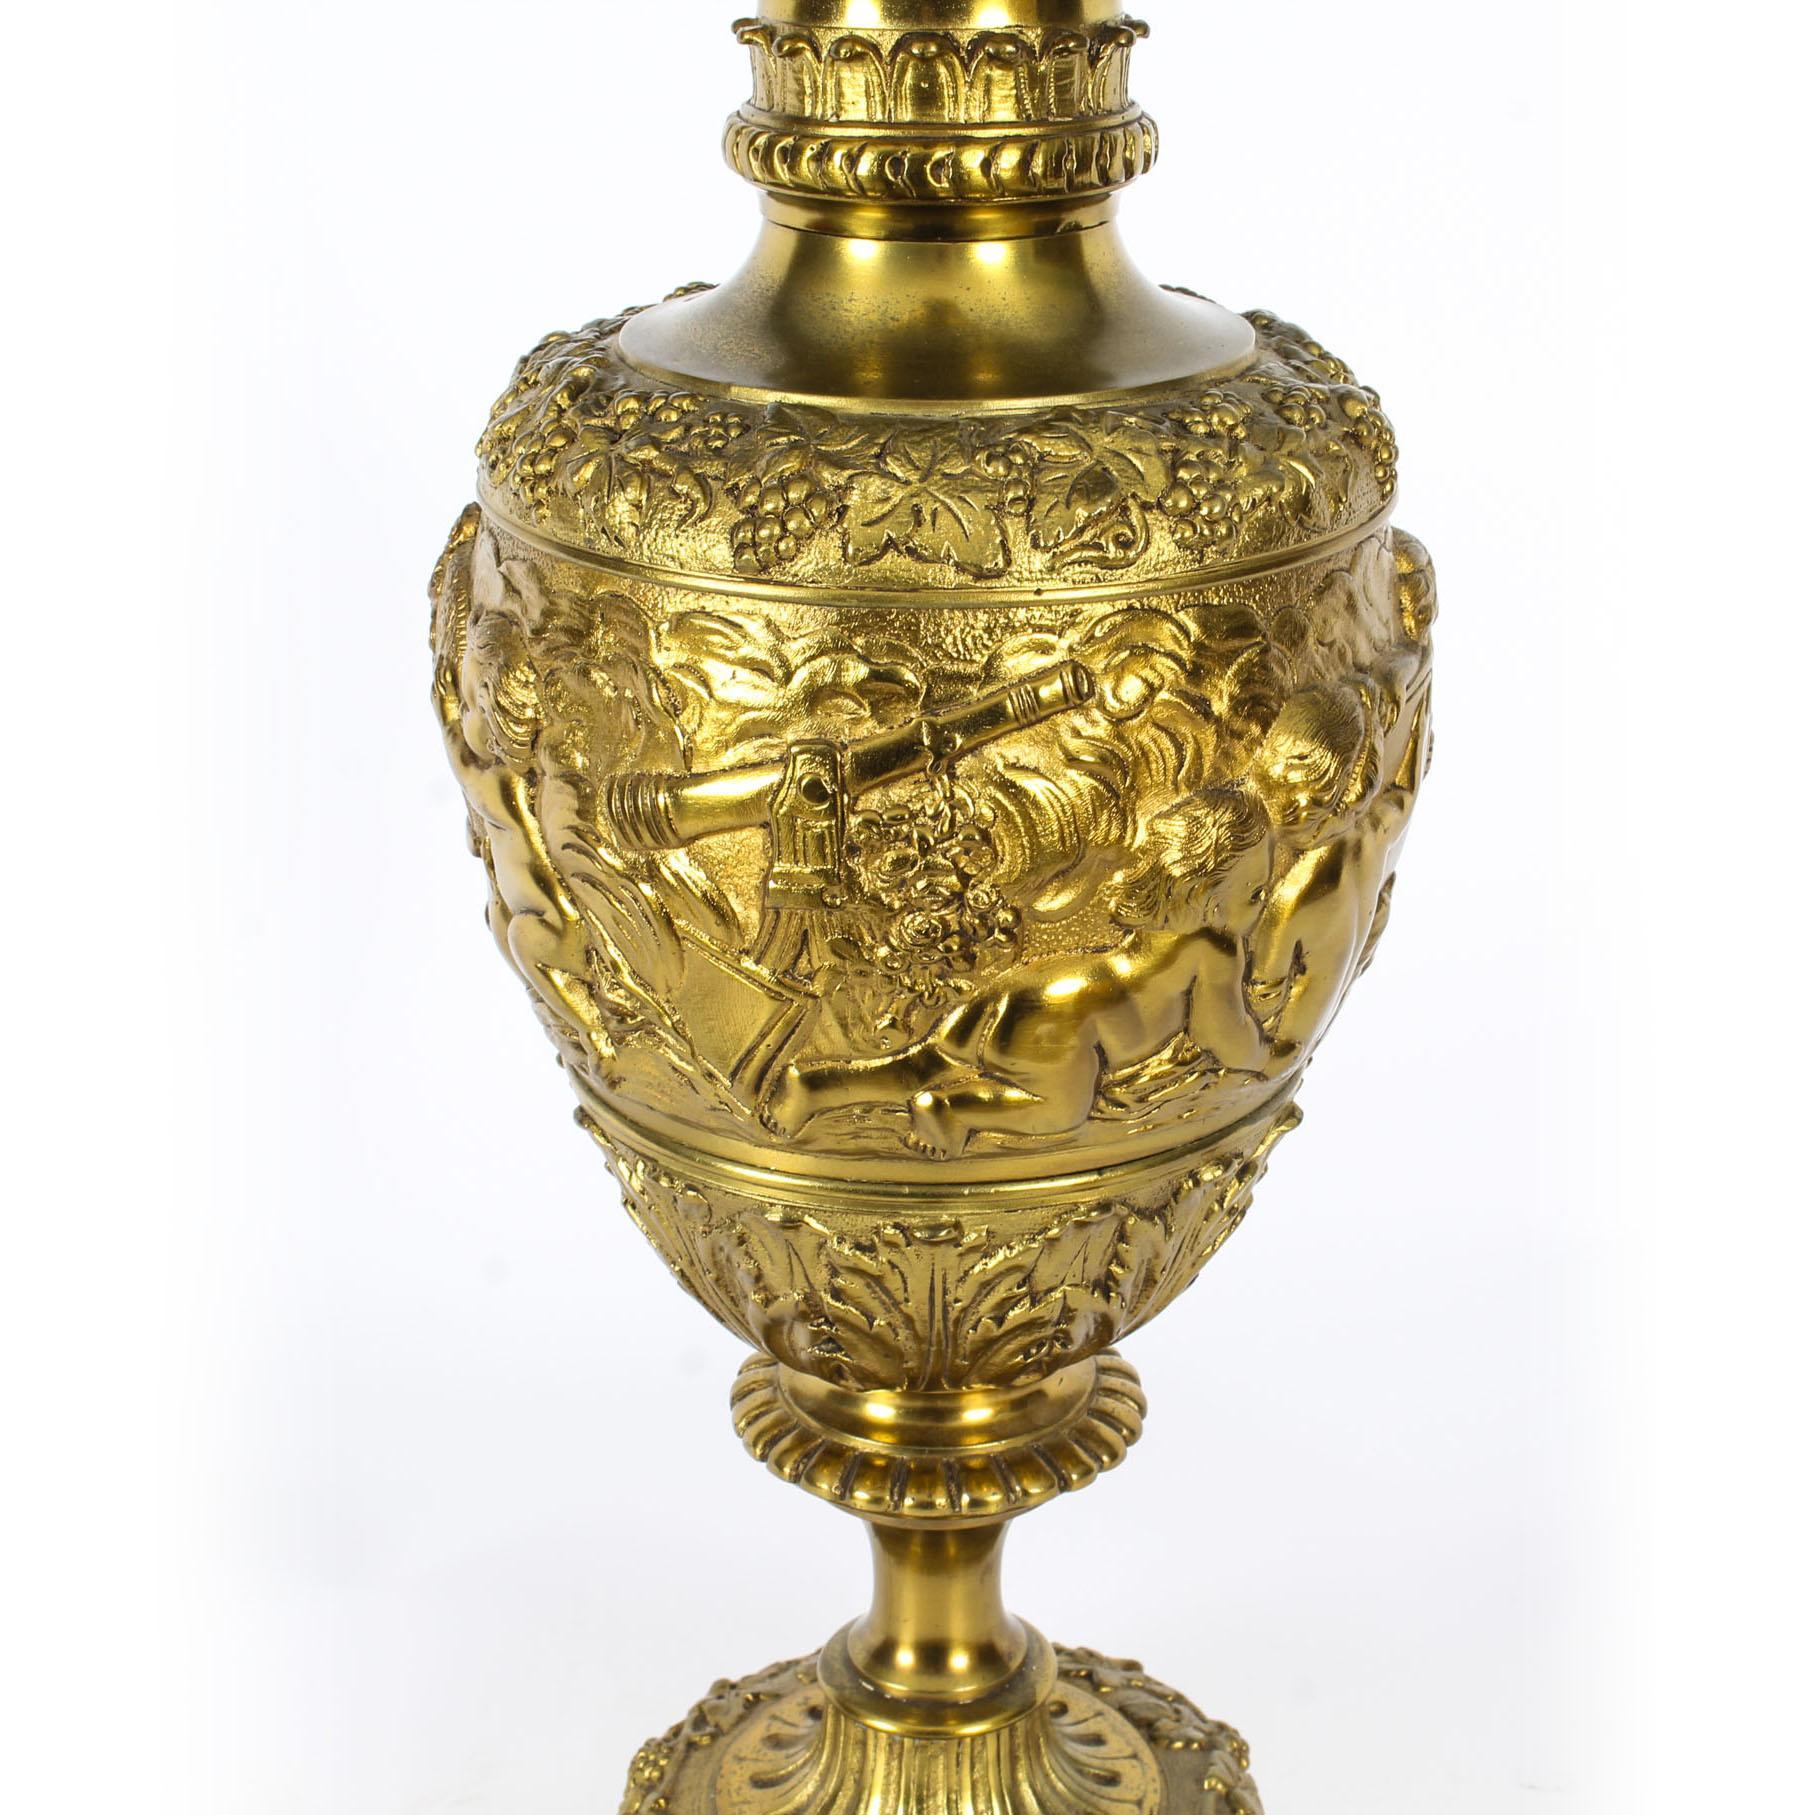 Antique Gilt Bronze Renaissance Revival Table Lamp, 19th Century For Sale 1